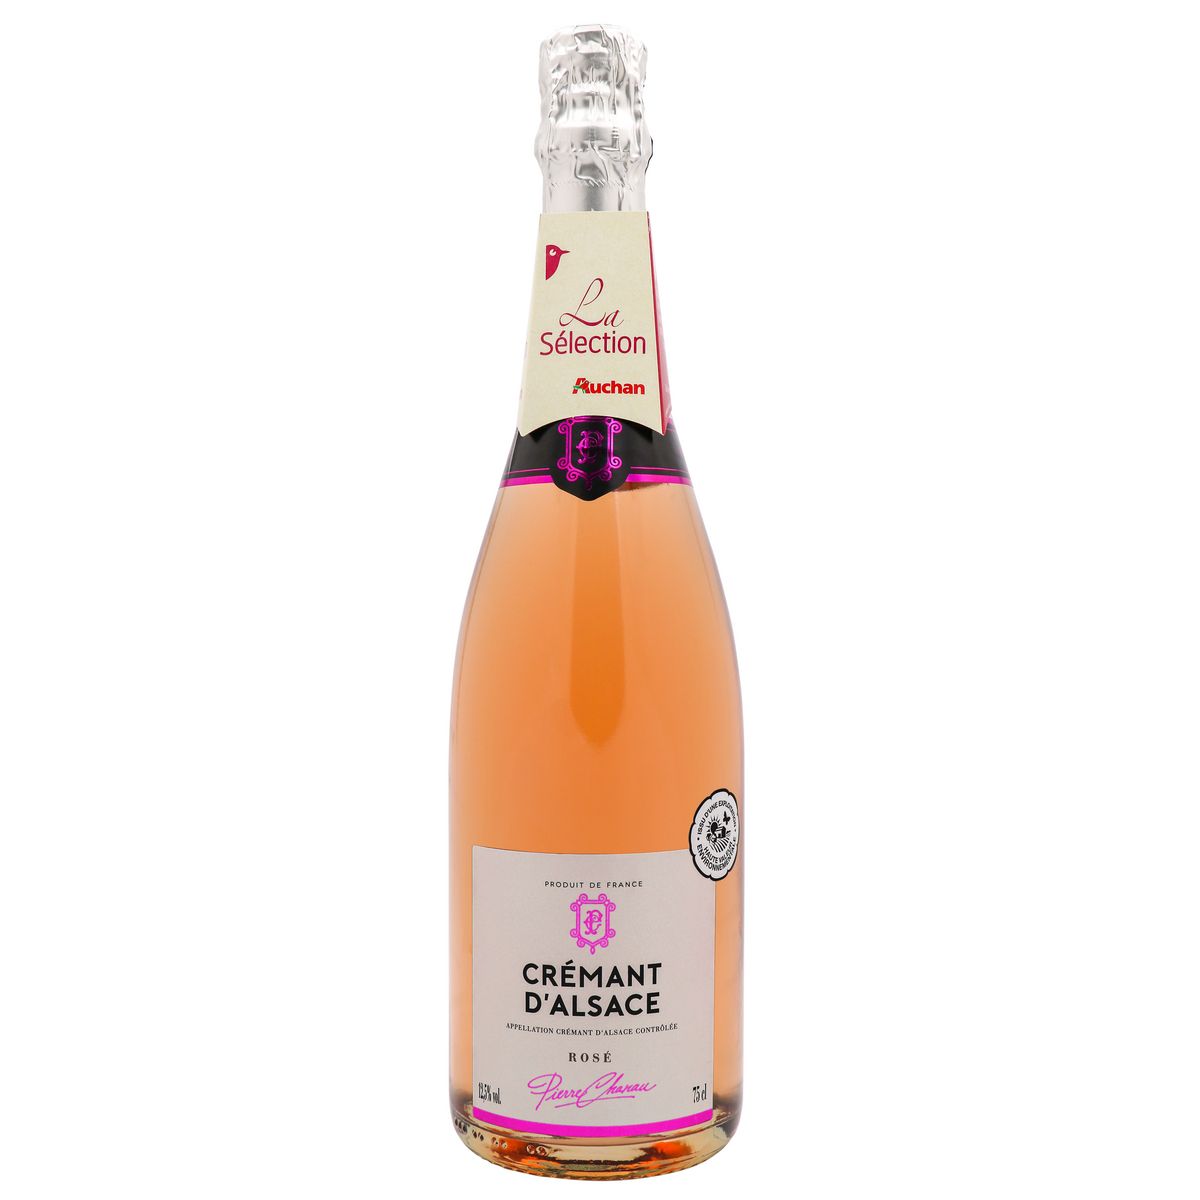 PIERRE CHANAU AOP Crémant d'Alsace rosé 75cl